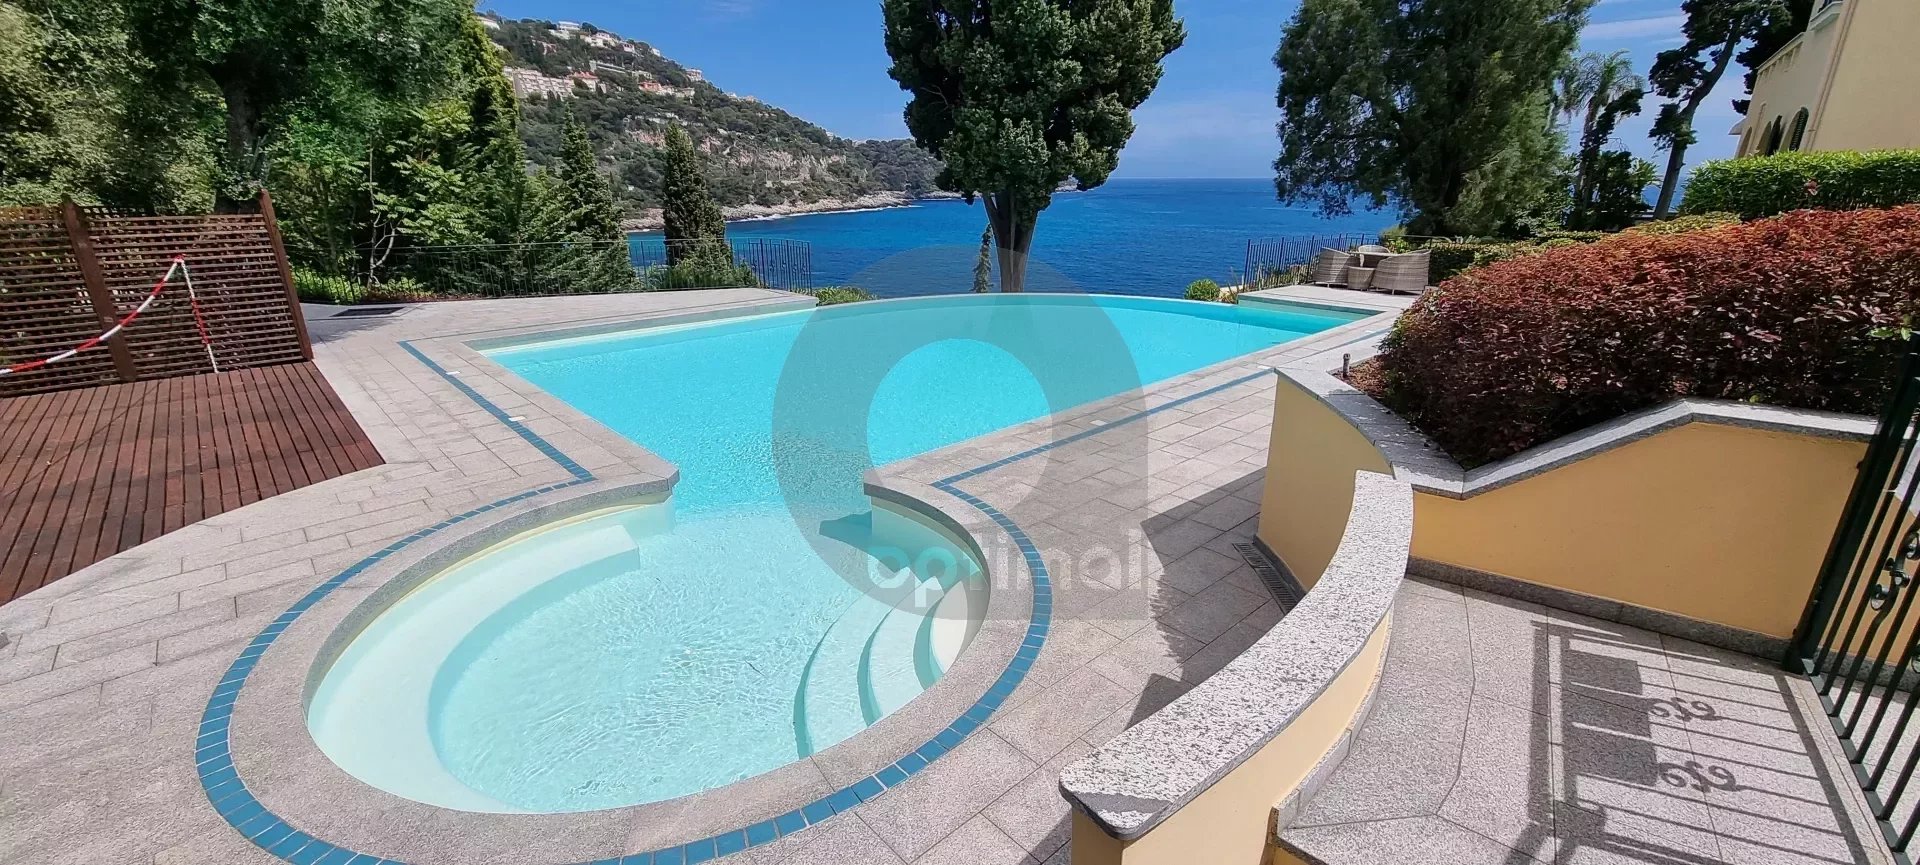 Roquebrune-Cap-Martin, proche Monaco, résidence Luxe avec piscine. Dernier étage vue mer.